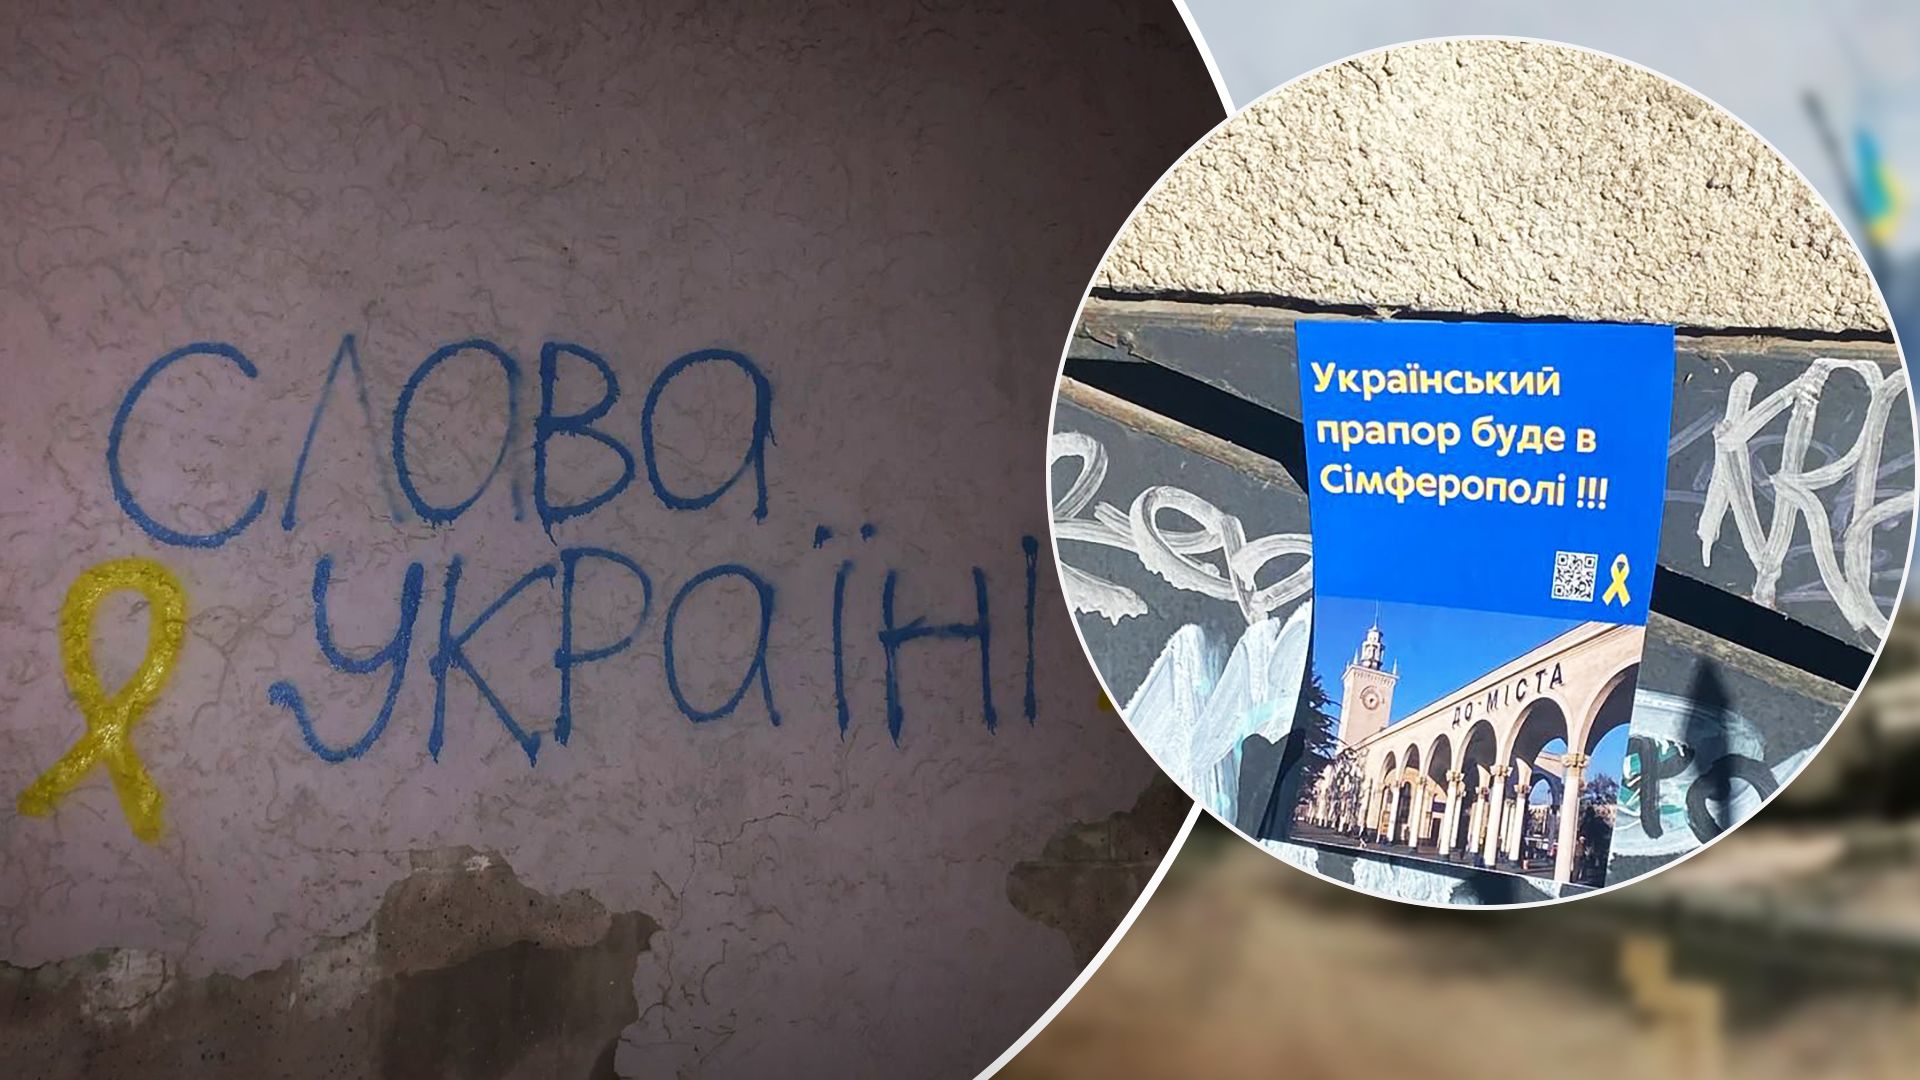 Активісти знову розмістили проукраїнські символи у Криму